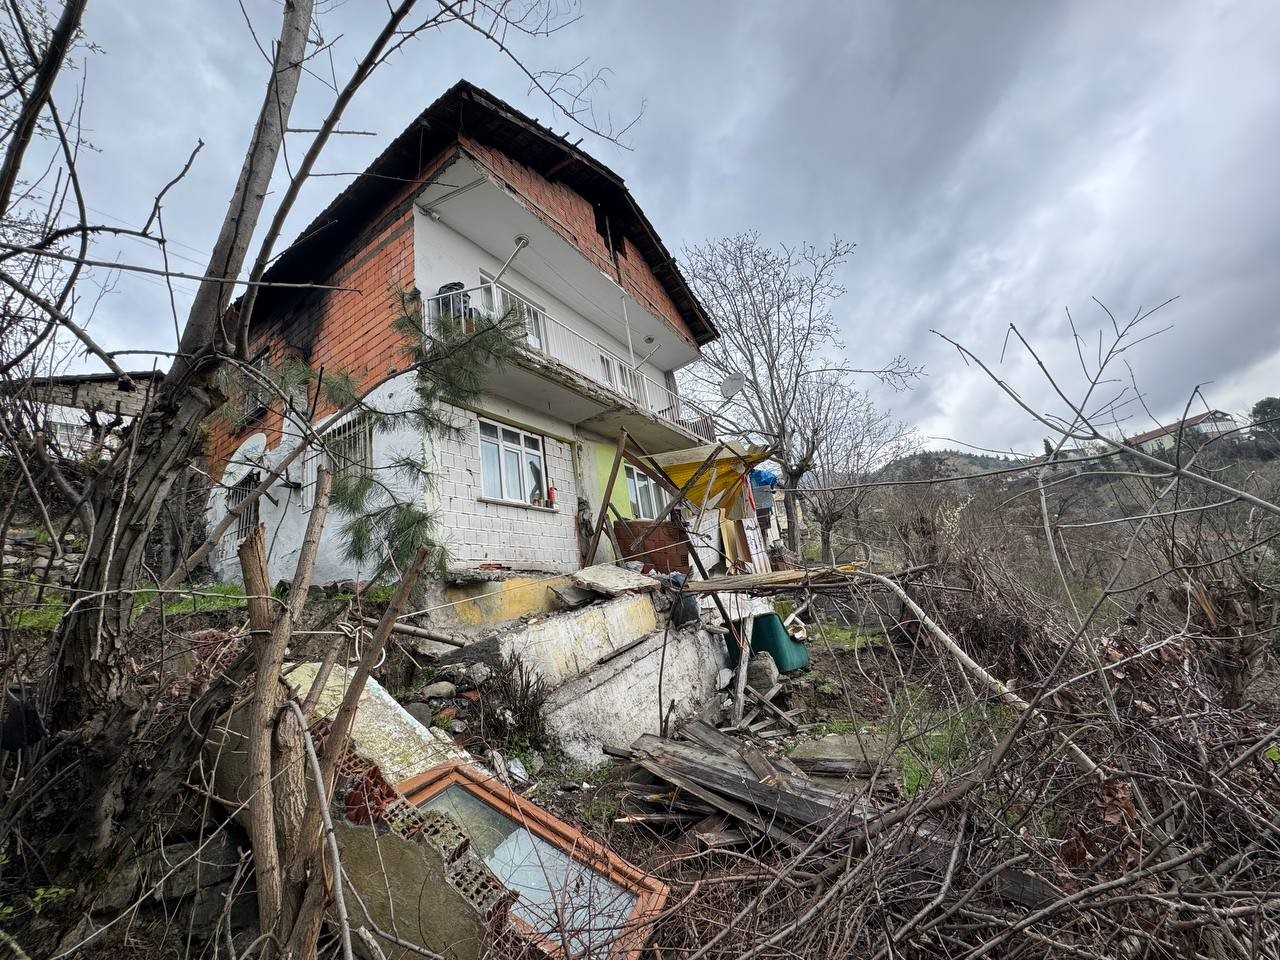 Karabük’te heyelan nedeniyle bir ev boşaltıldı